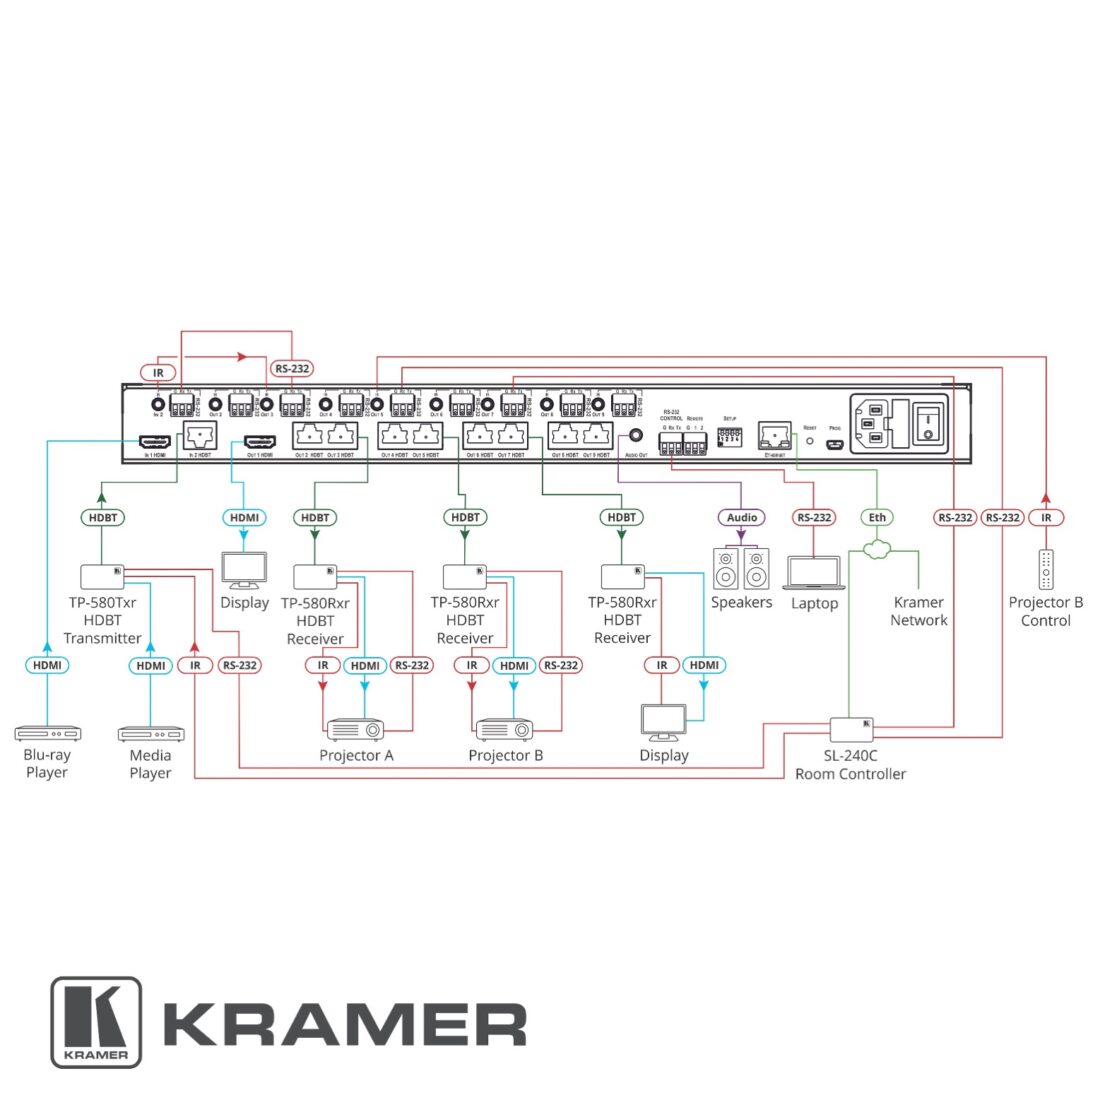 Kramer VM-218DT diagram